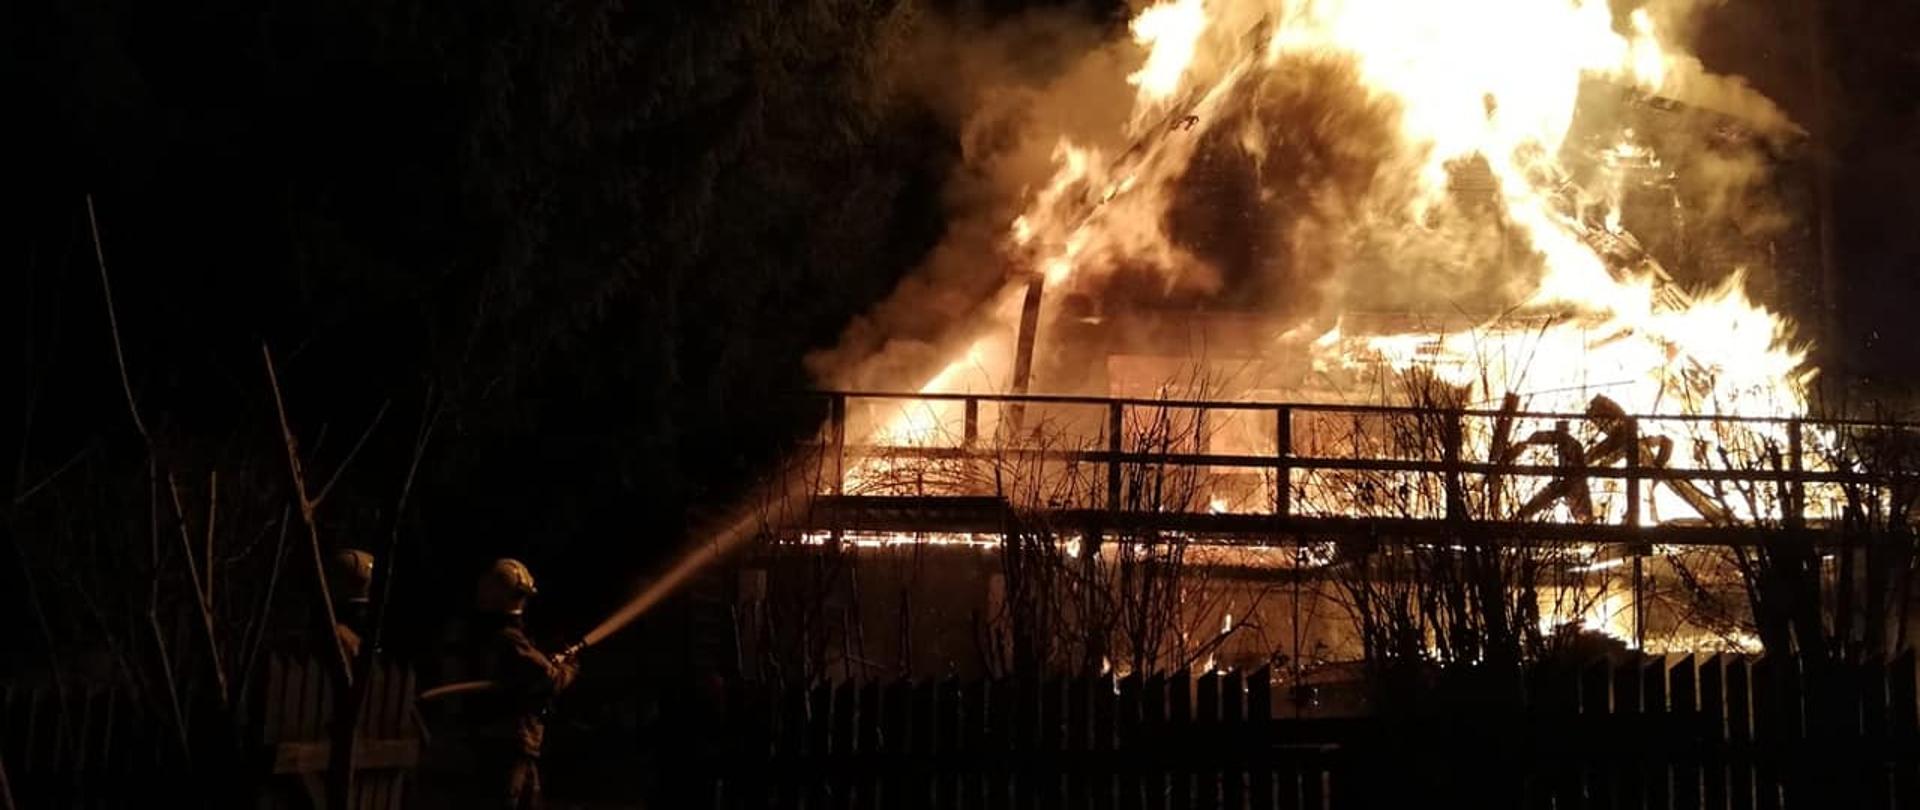 Zdjęcie przedstawia w pełni rozwinięty pożar domku letniskowego w miejscowości Narty